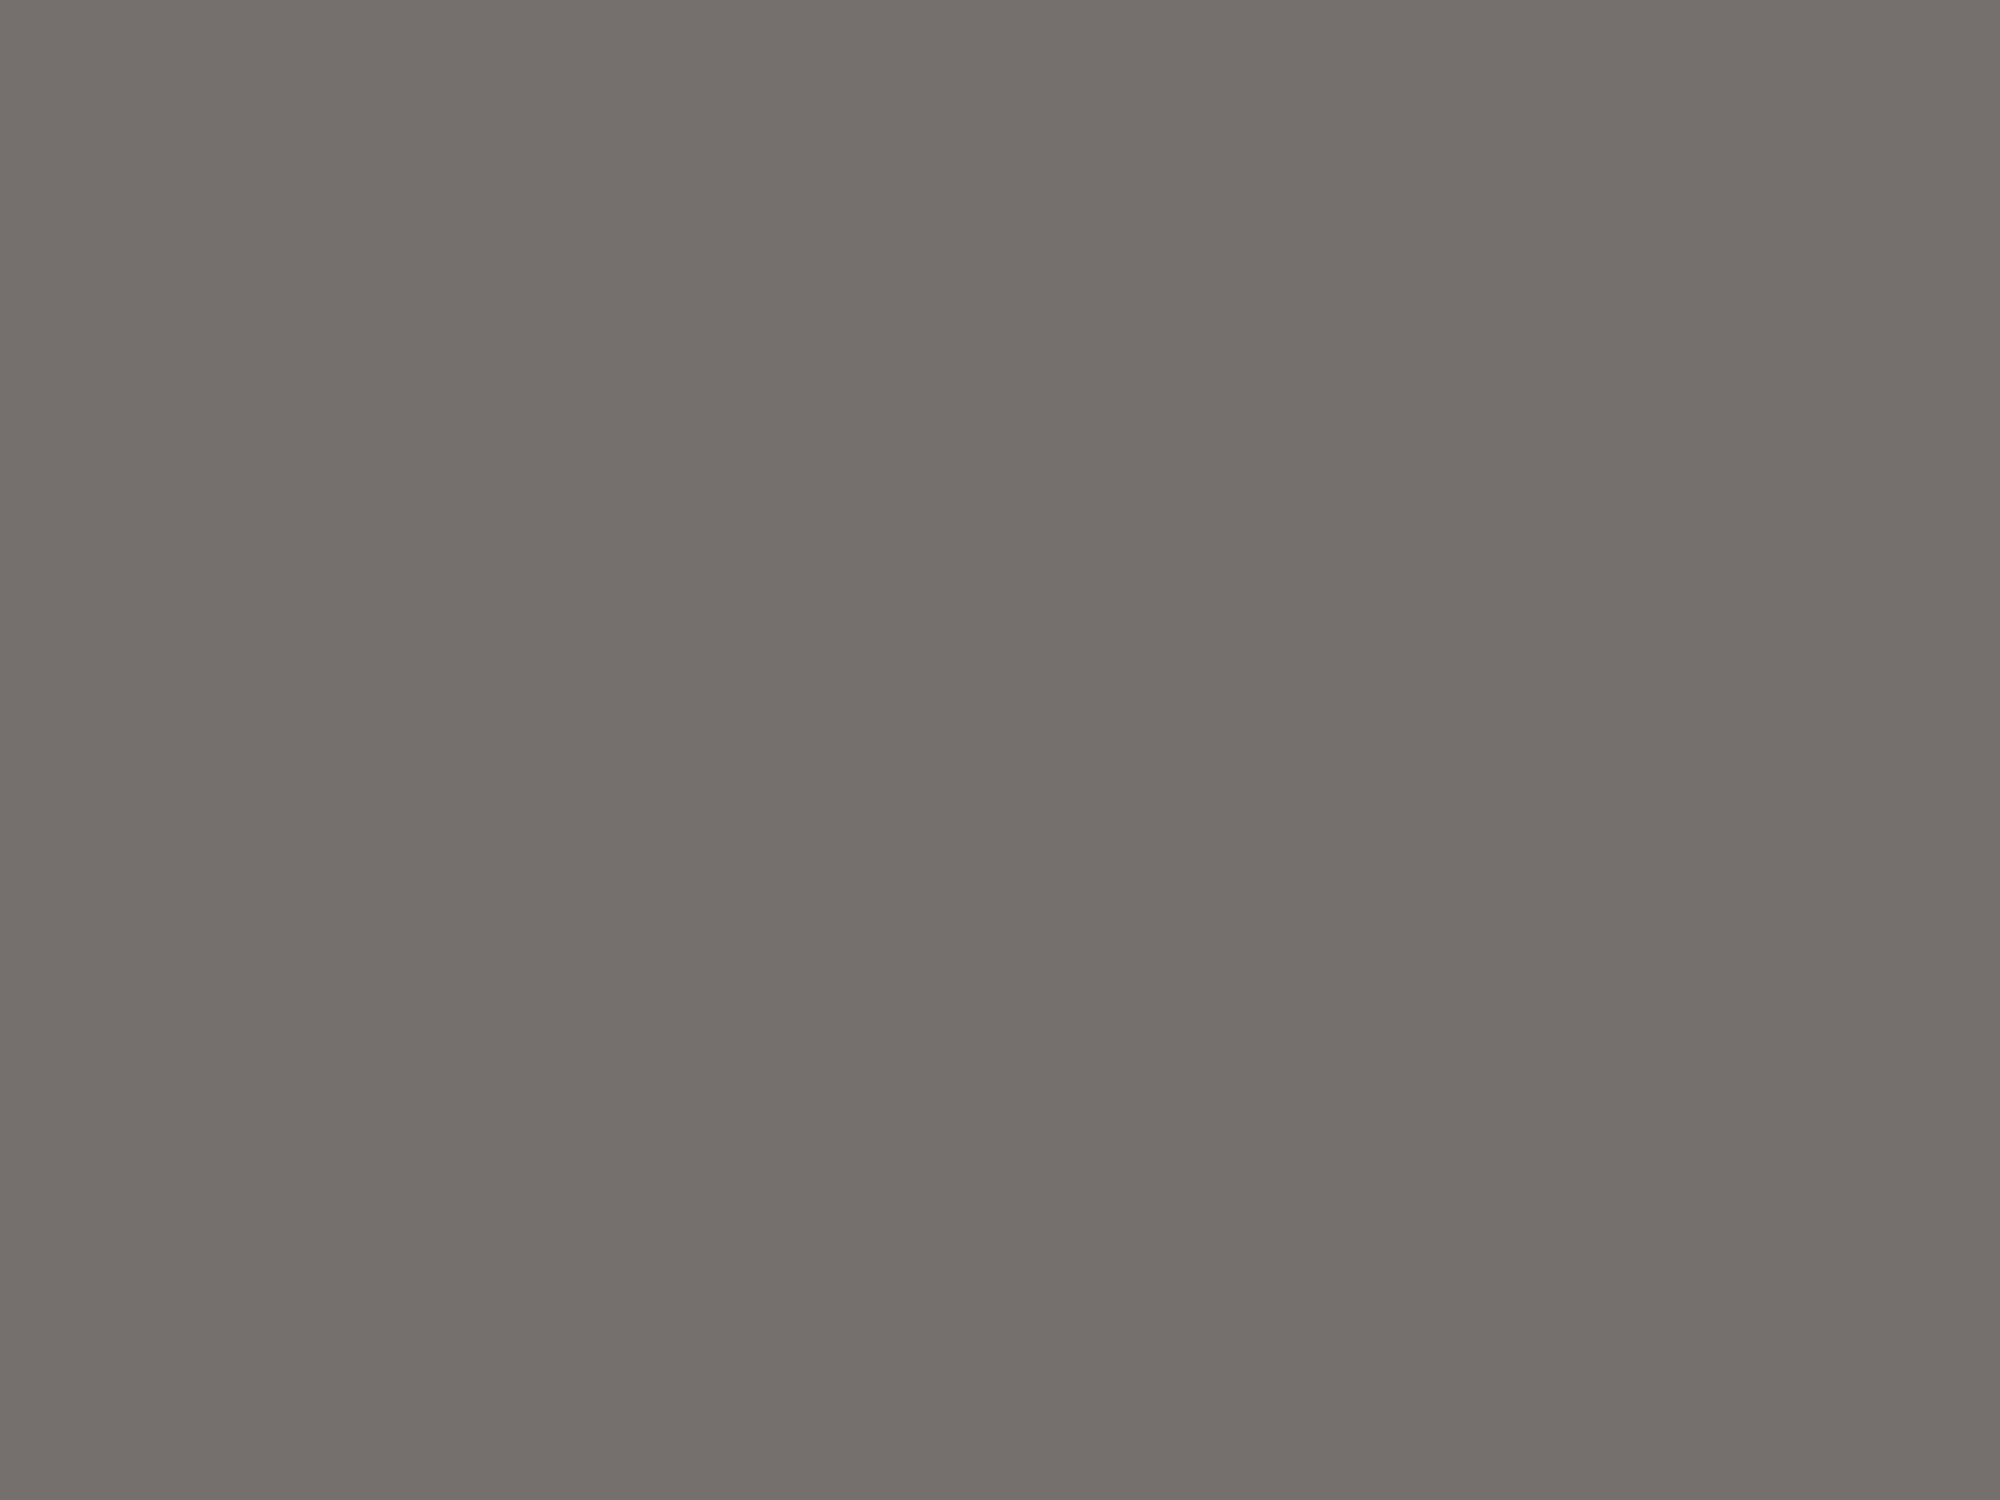 Василий Ворносков. Скульптура «Дятел». 1900-е. Всероссийский музей декоративно-прикладного и народного искусства, Москва